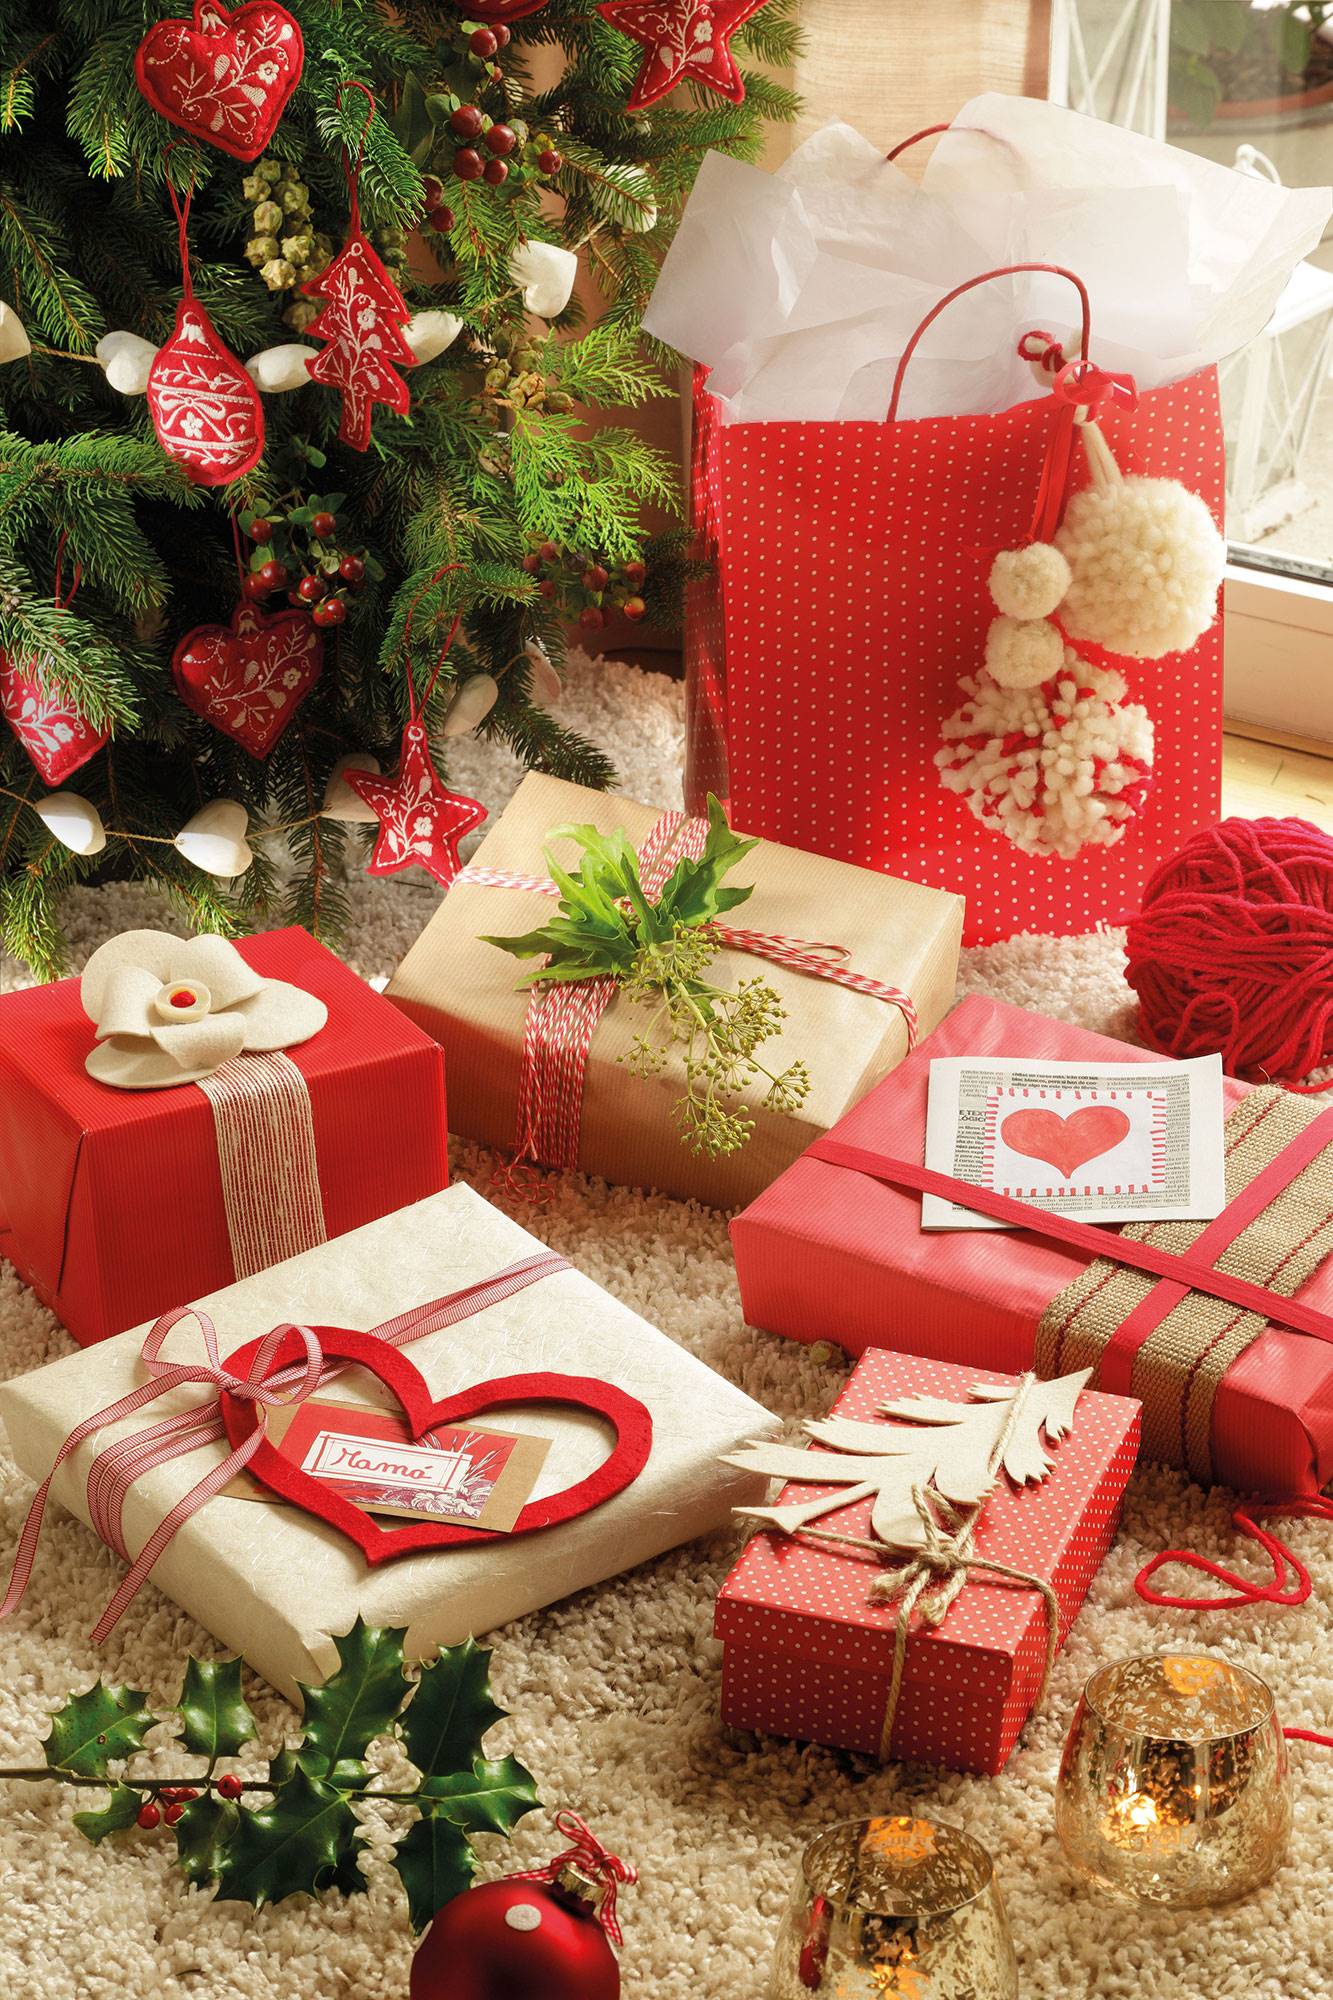 Detalle de regalos de Navidad junto al árbol decorados con detalles de fieltro, de papel y motivos vegetales